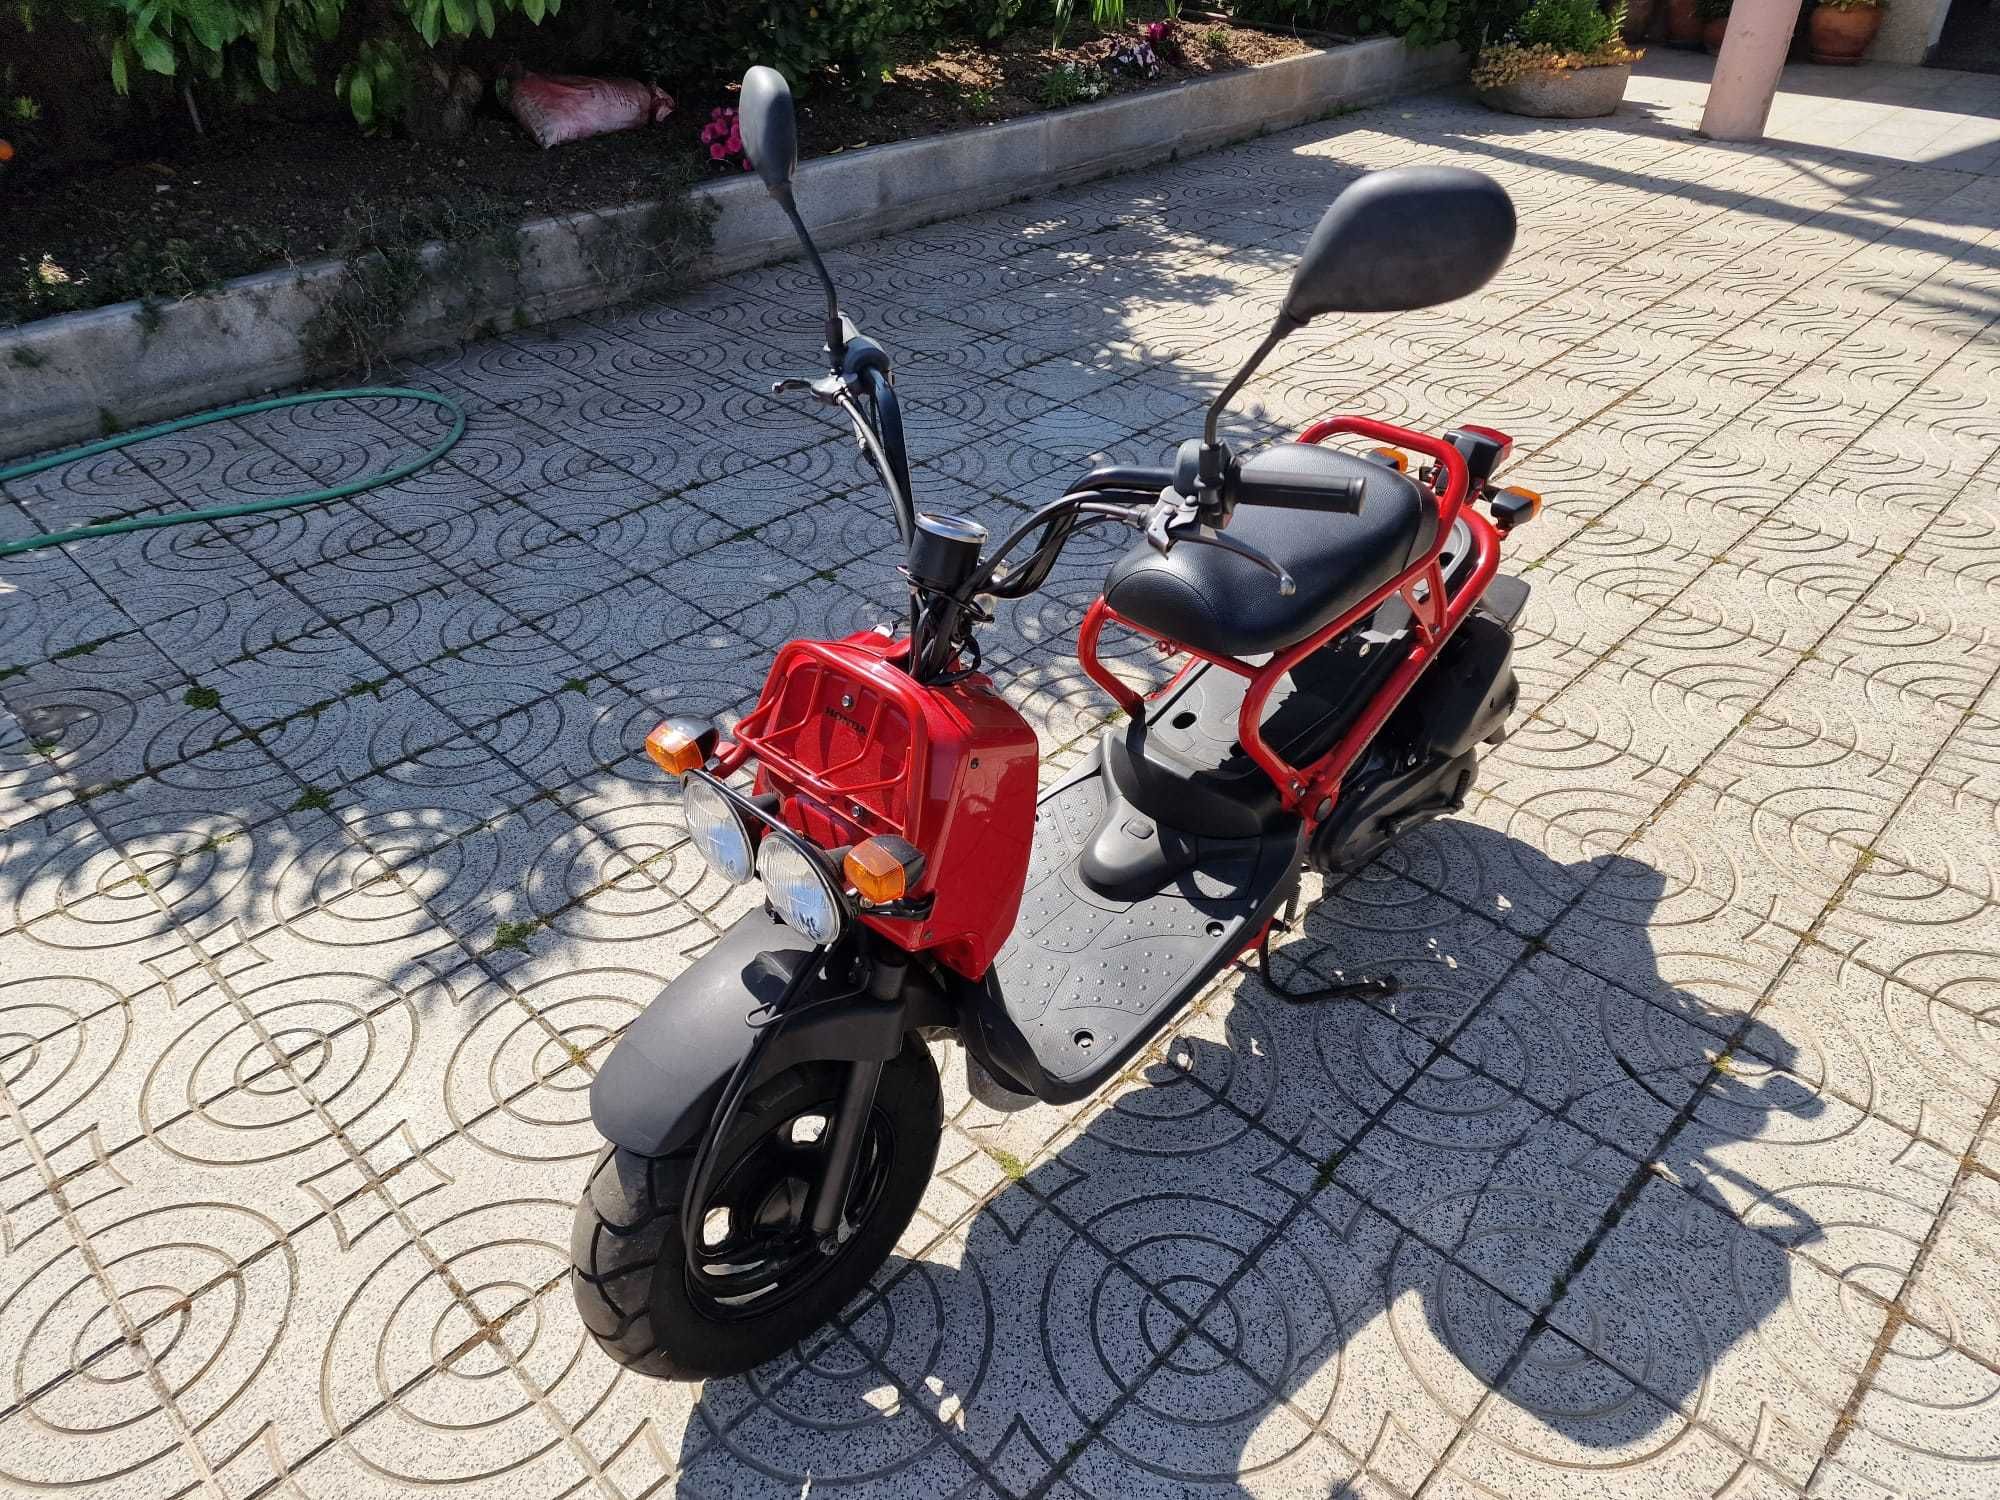 Motociclos - Scooters em Portugal